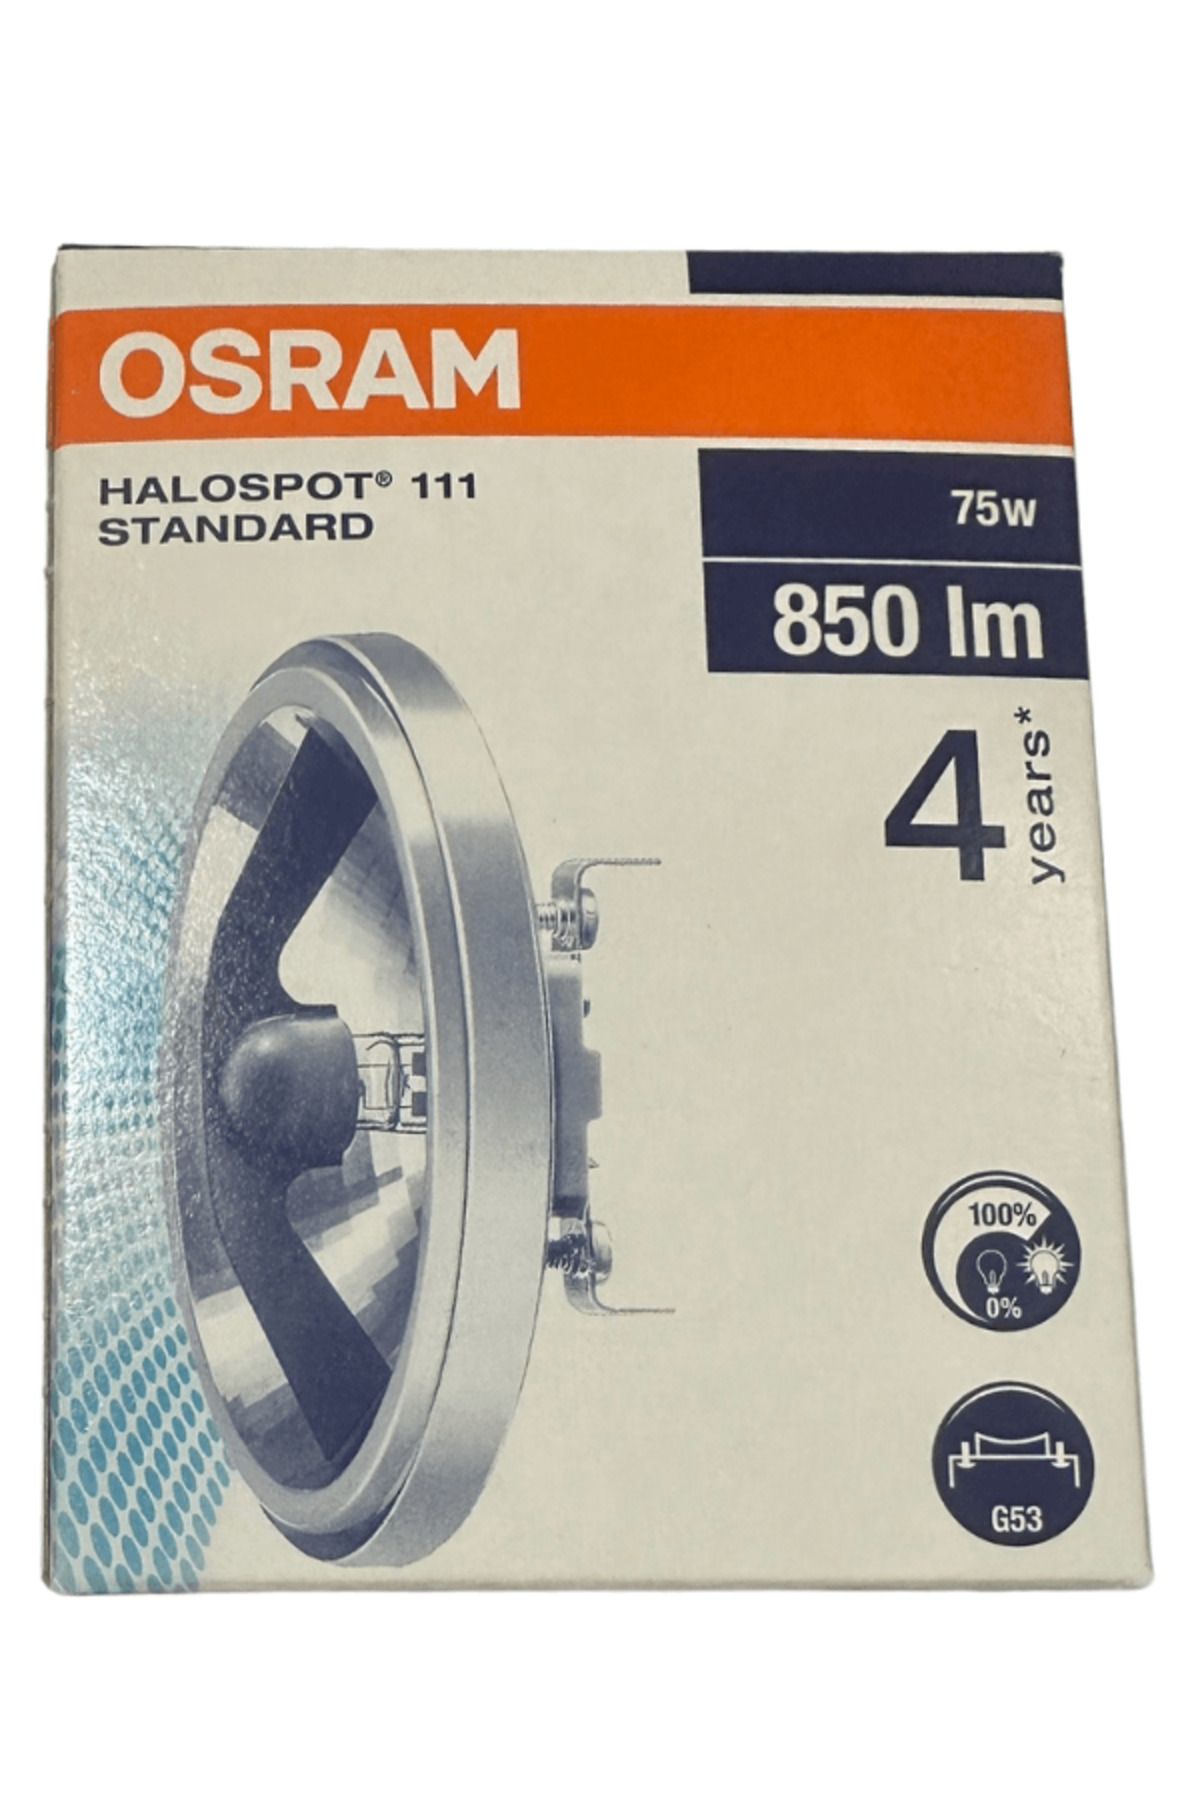 Osram Halospot 111 Standard 75W 3000K (Sarı Işık) G53 Duylu Halospot